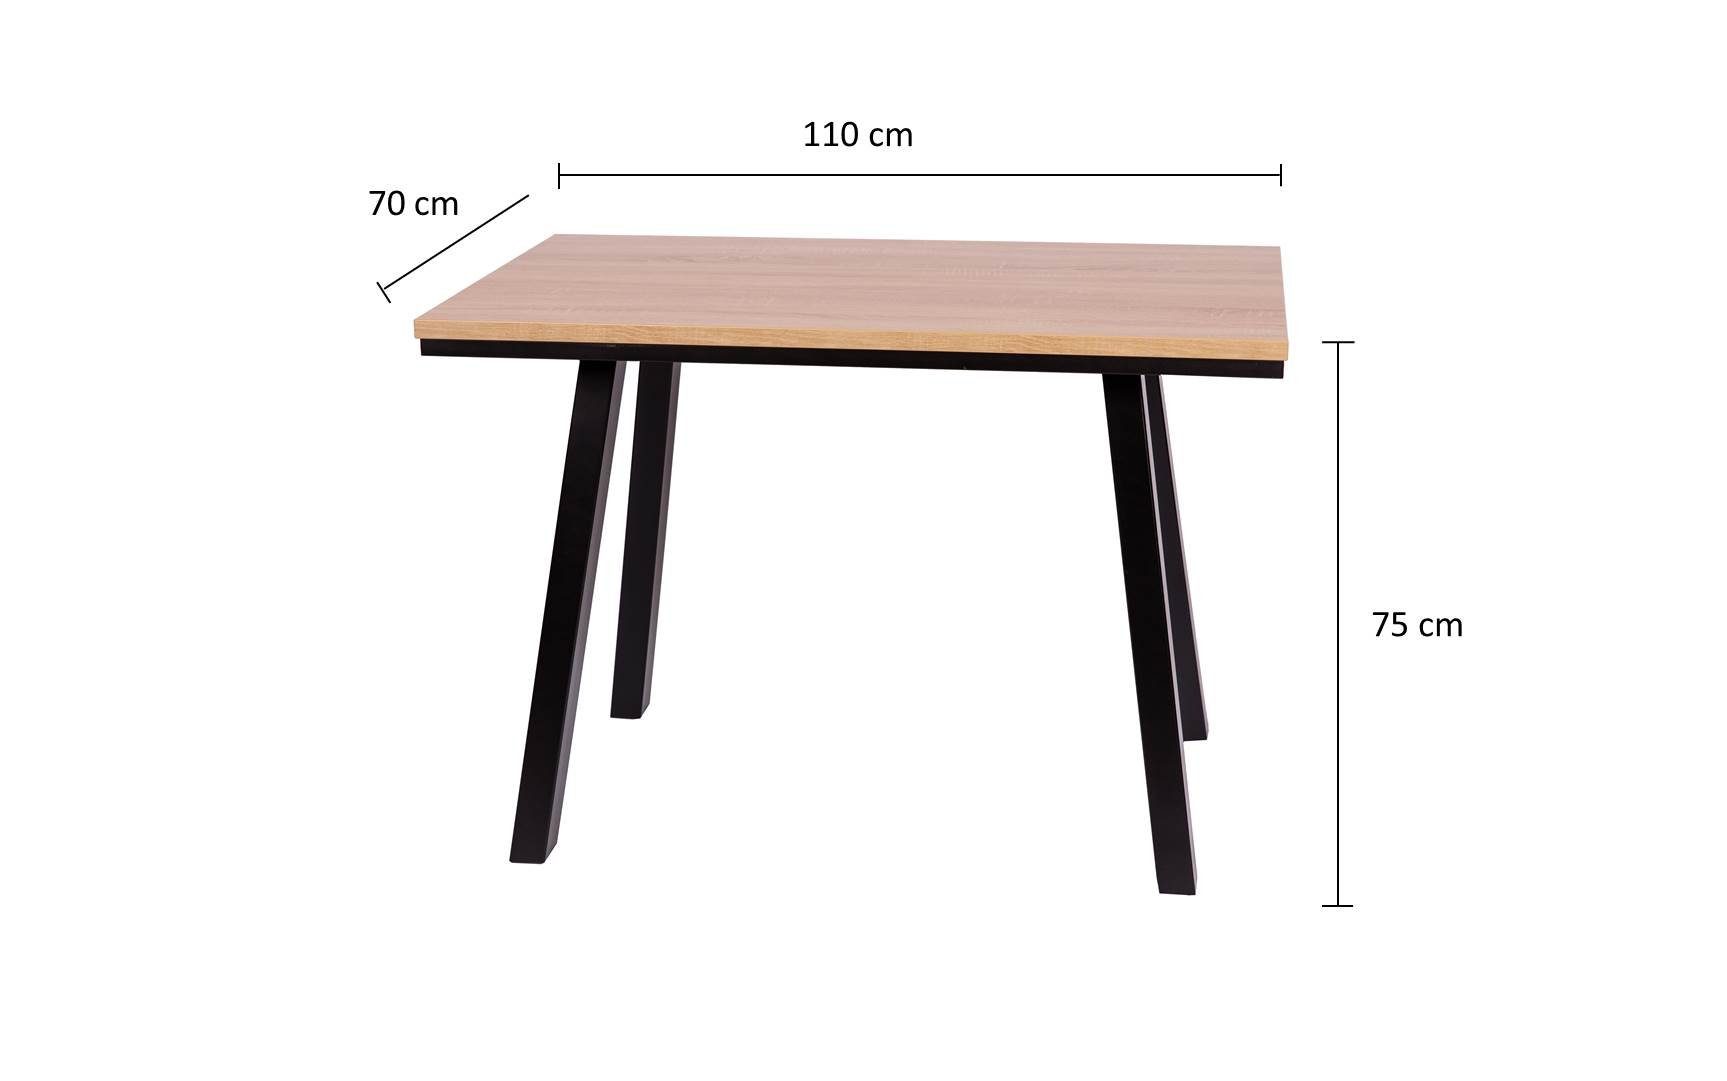 Tischfüße schwarz lackiert massiv 'Der home kundler Elegante' Esstisch 110x70cm,